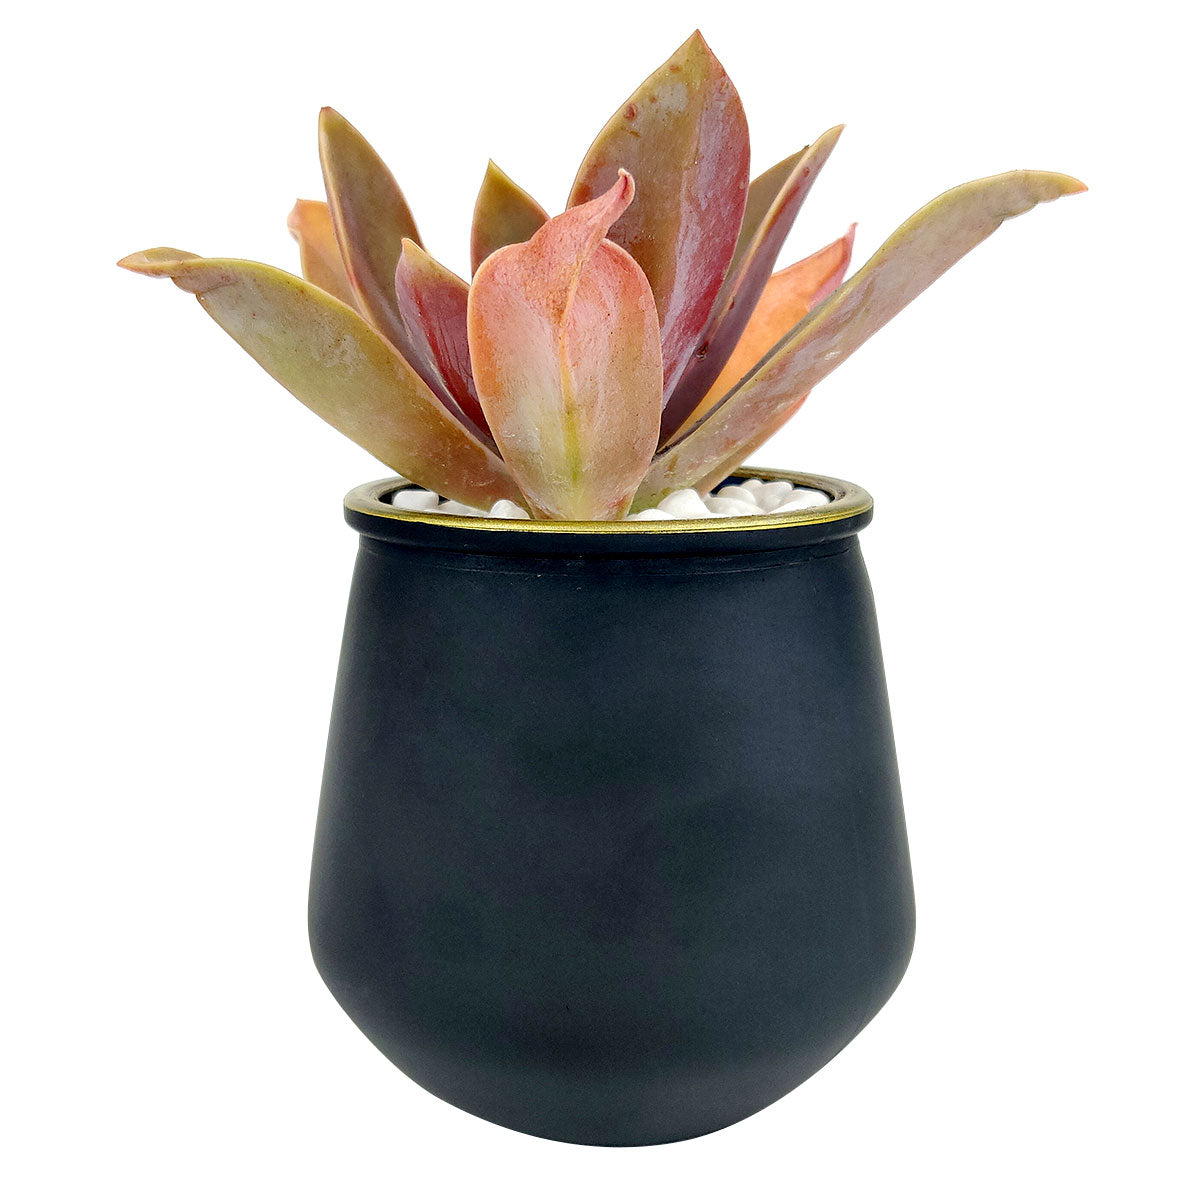 Pot for sale, Mini pot for succulent, Succulent pot decor ideas, Black Gold rim pot, Flower pot for sale, glass pots for planting, succulent gift for holiday